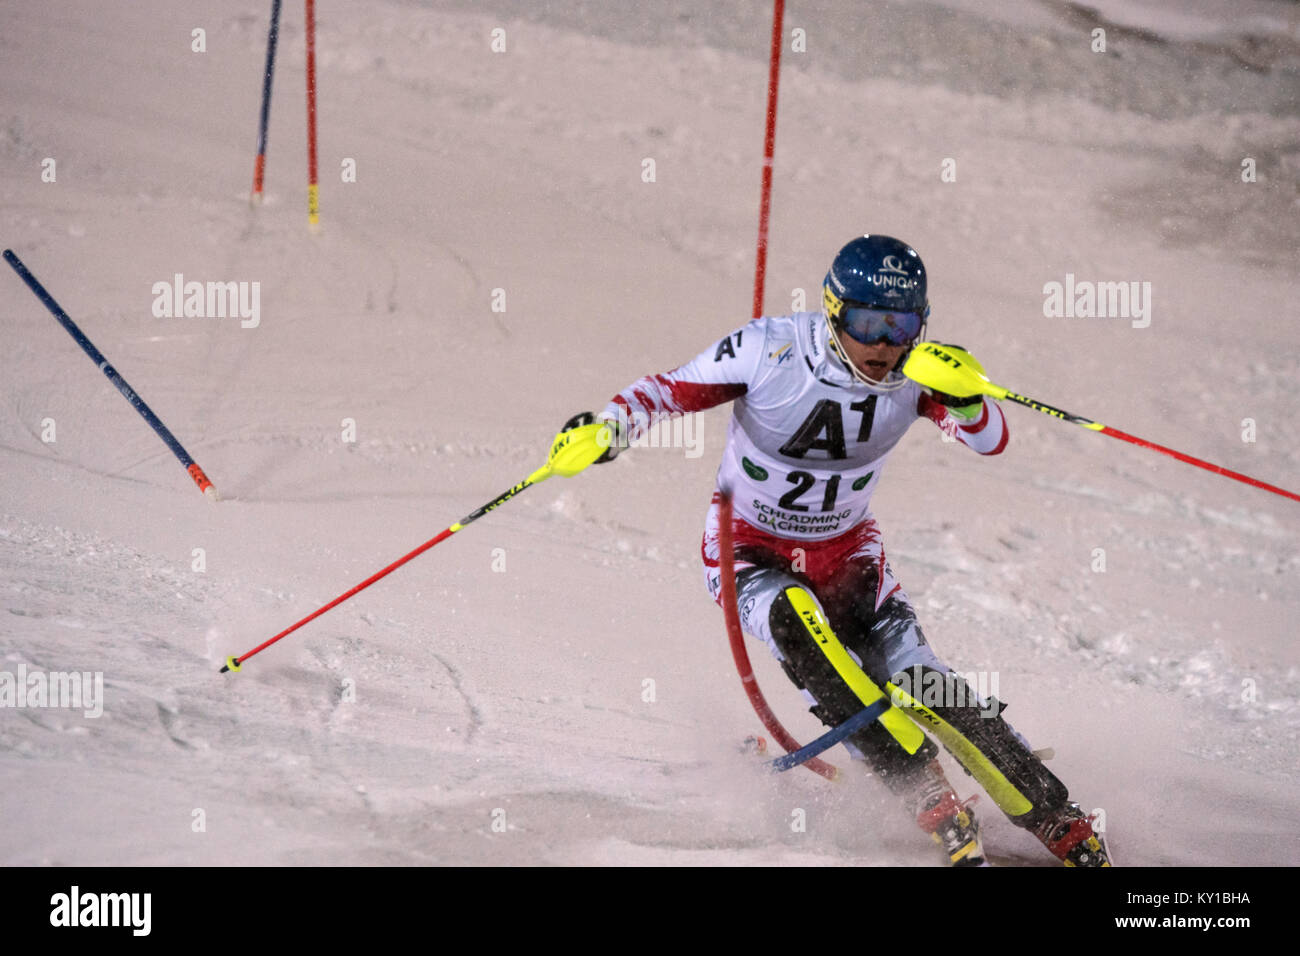 Die Österreichische Wm Ski alpin Racer Benjamin Raich (21) stellt Schritt während der erste Lauf der Männer Slalom am AUDI FIS Weltcup Rennen in Schladming. Photo Credit: Christoph Oberschneider. Stockfoto